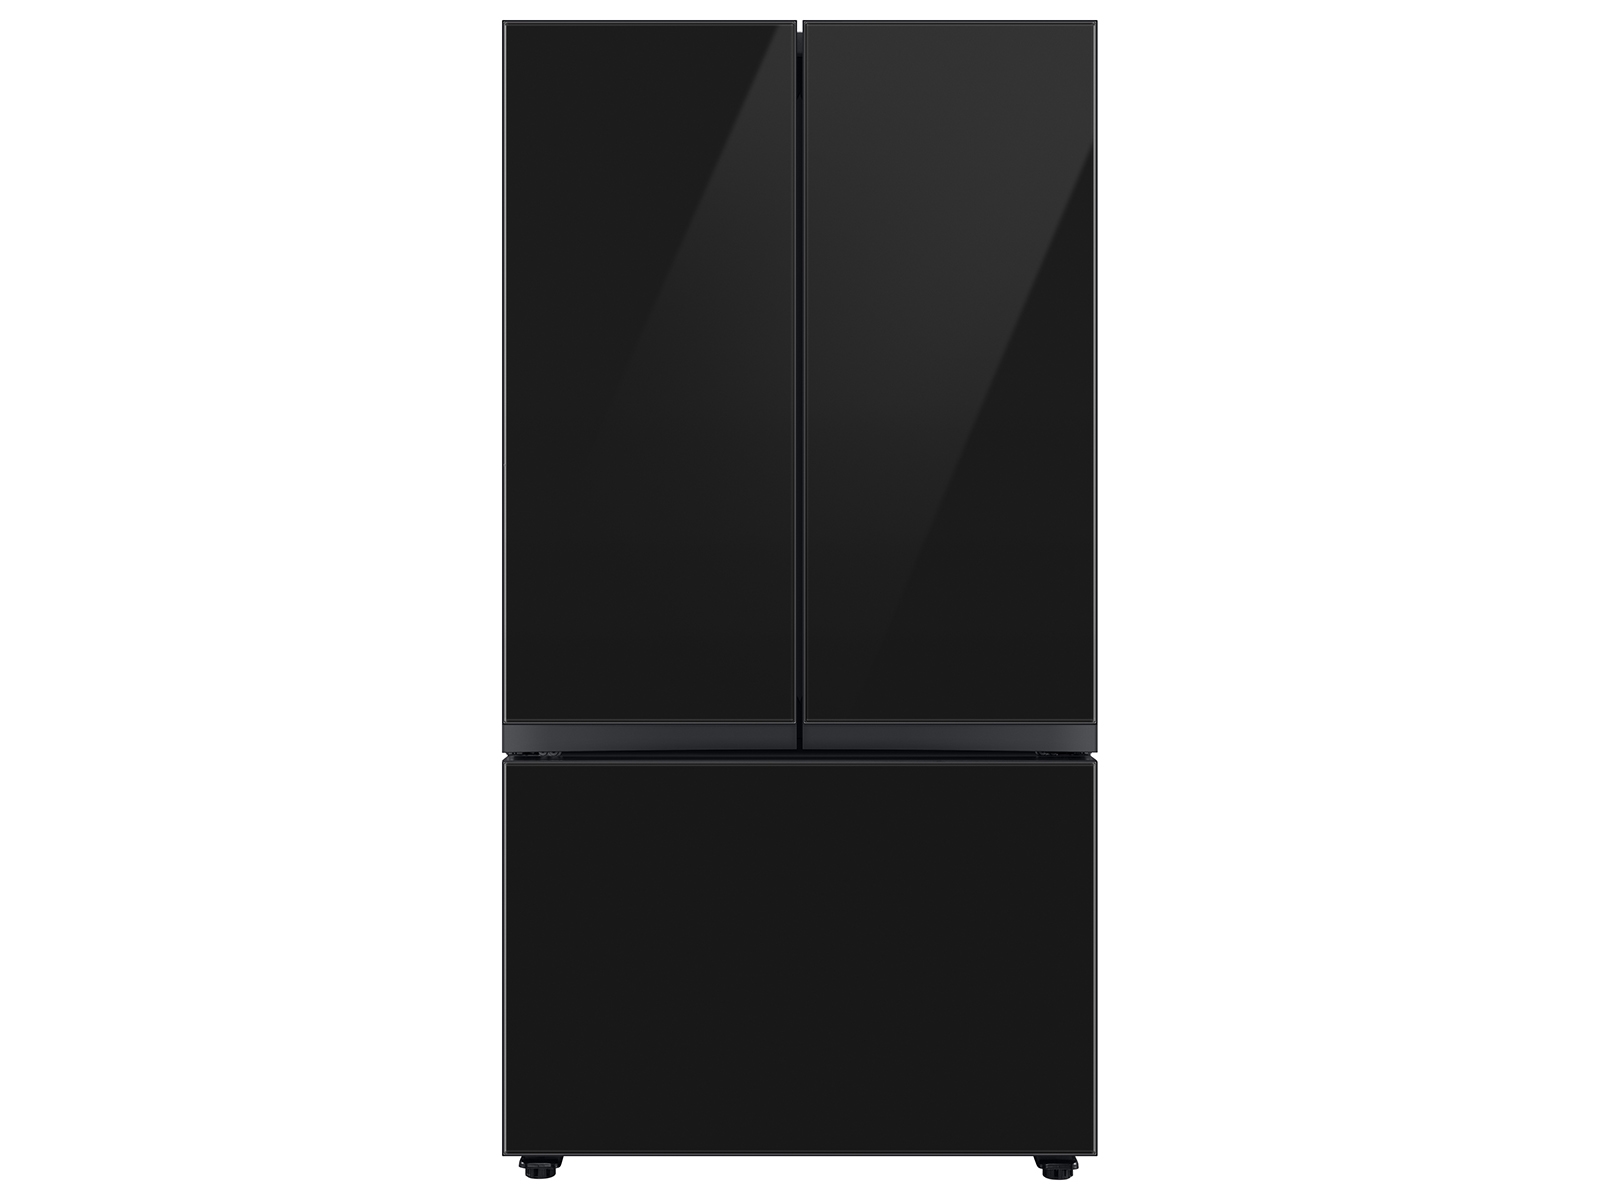 Bespoke 3-Door French Door Refrigerator (24 cu. ft.) with Beverage Center&trade; in Charcoal Glass